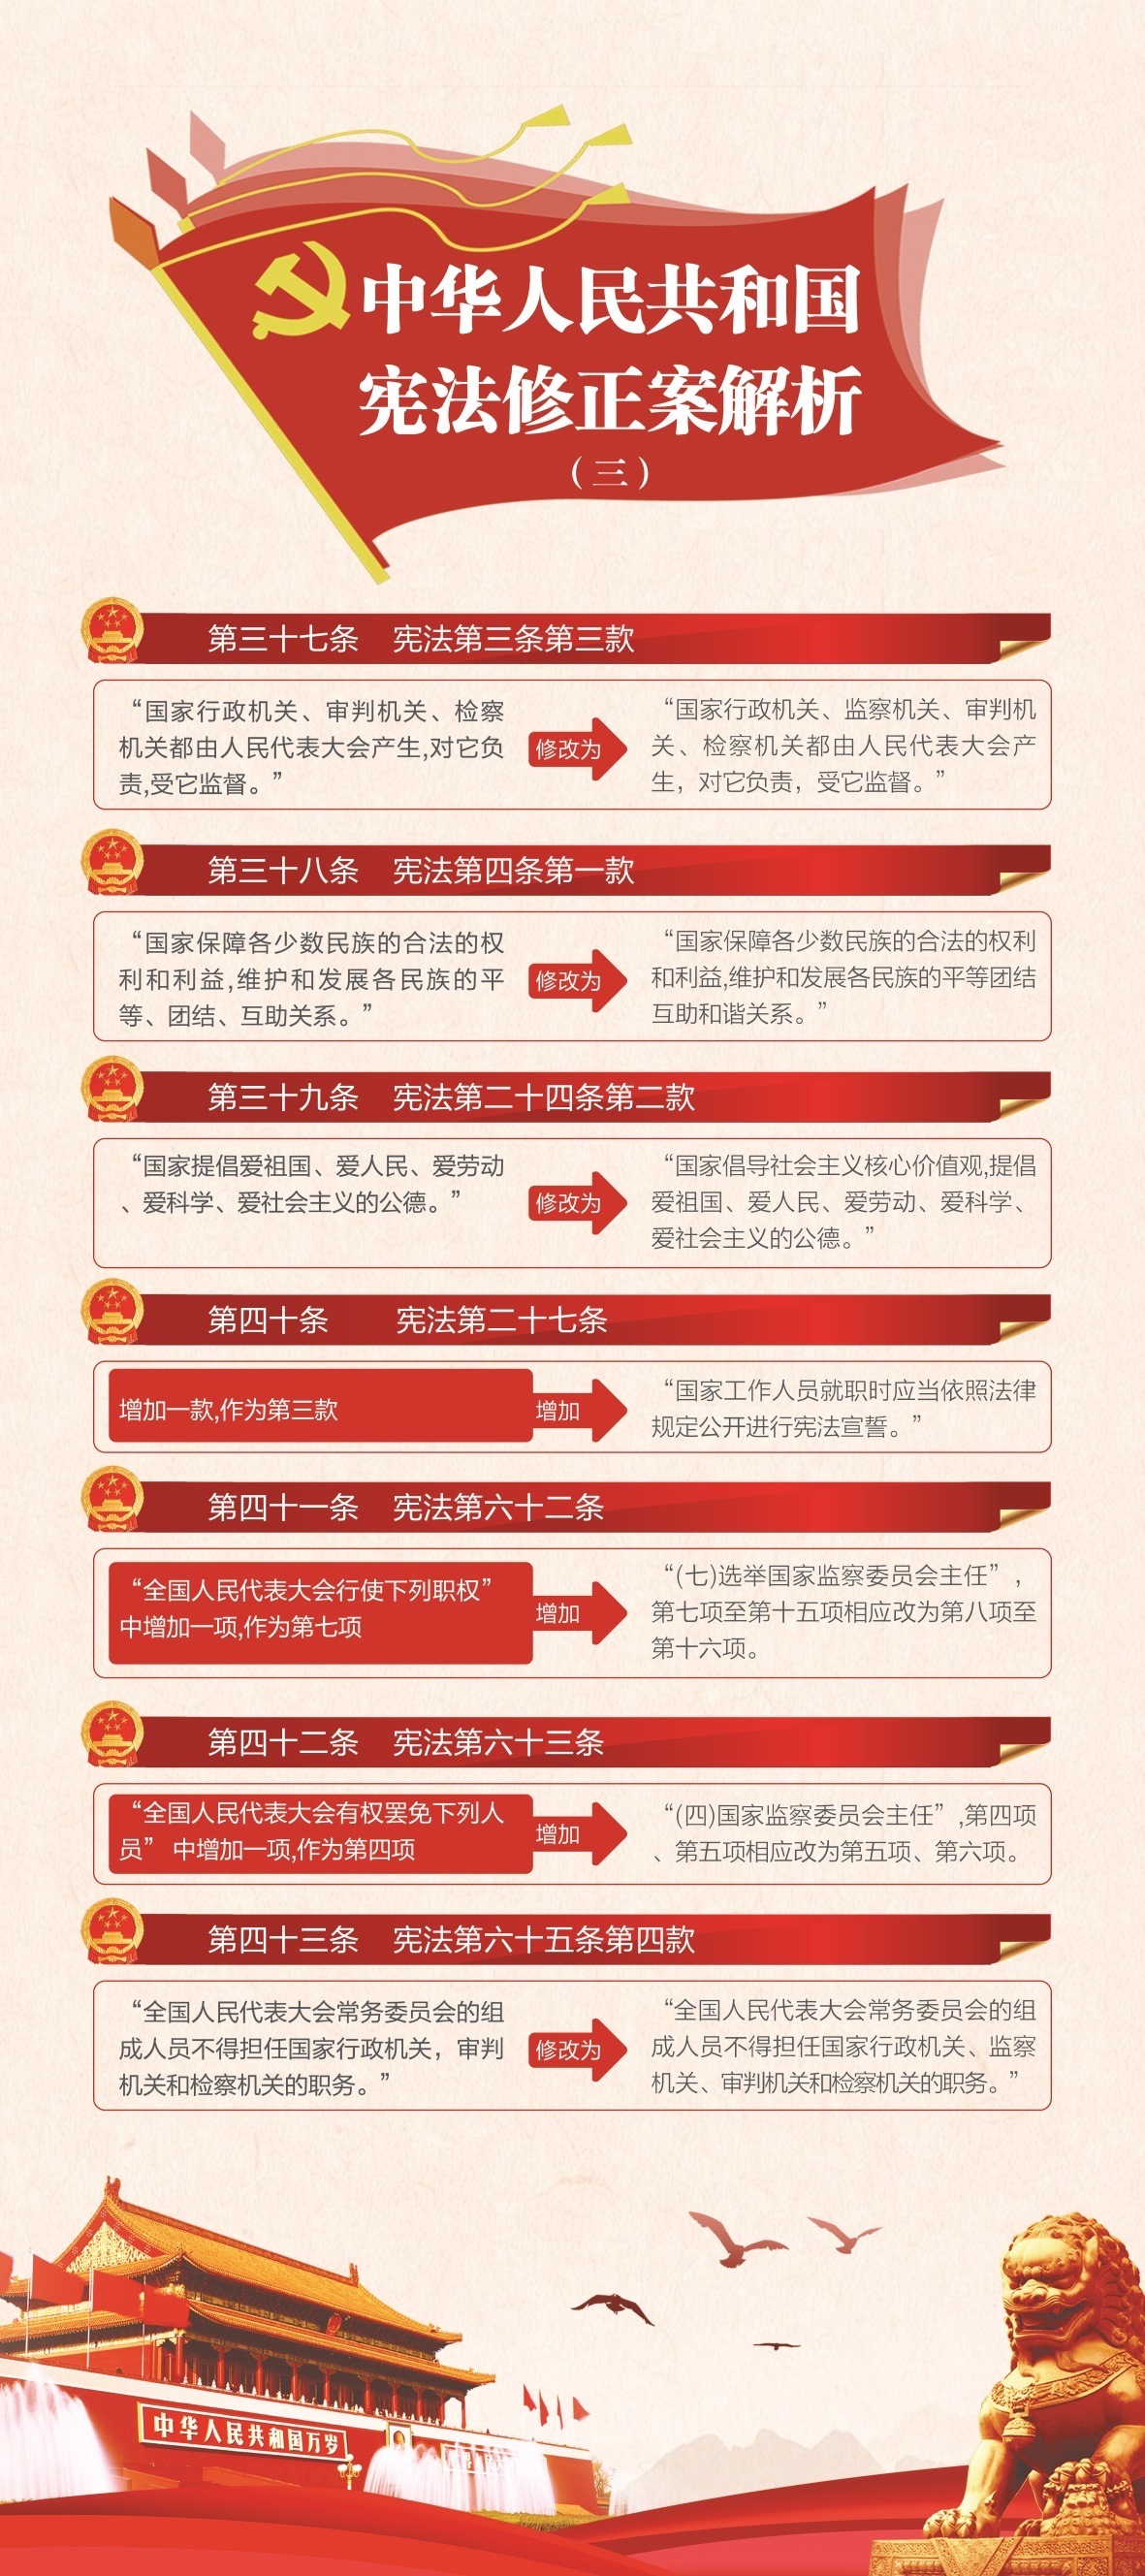 中國電信系列展架設計圖2